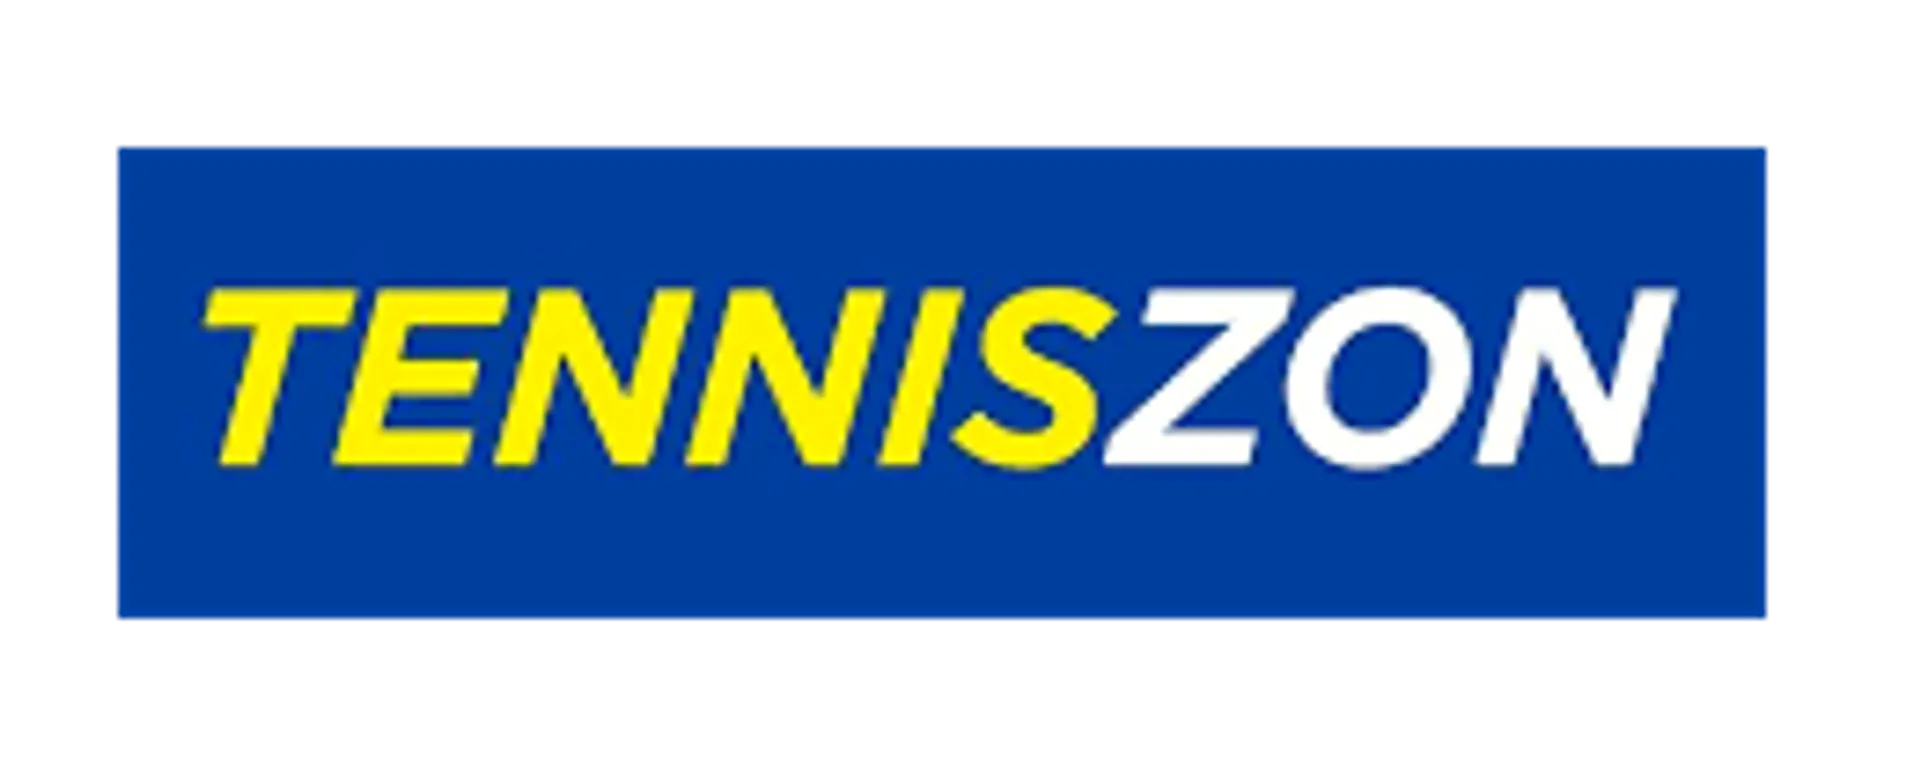 TENNISZON logo de circulaire